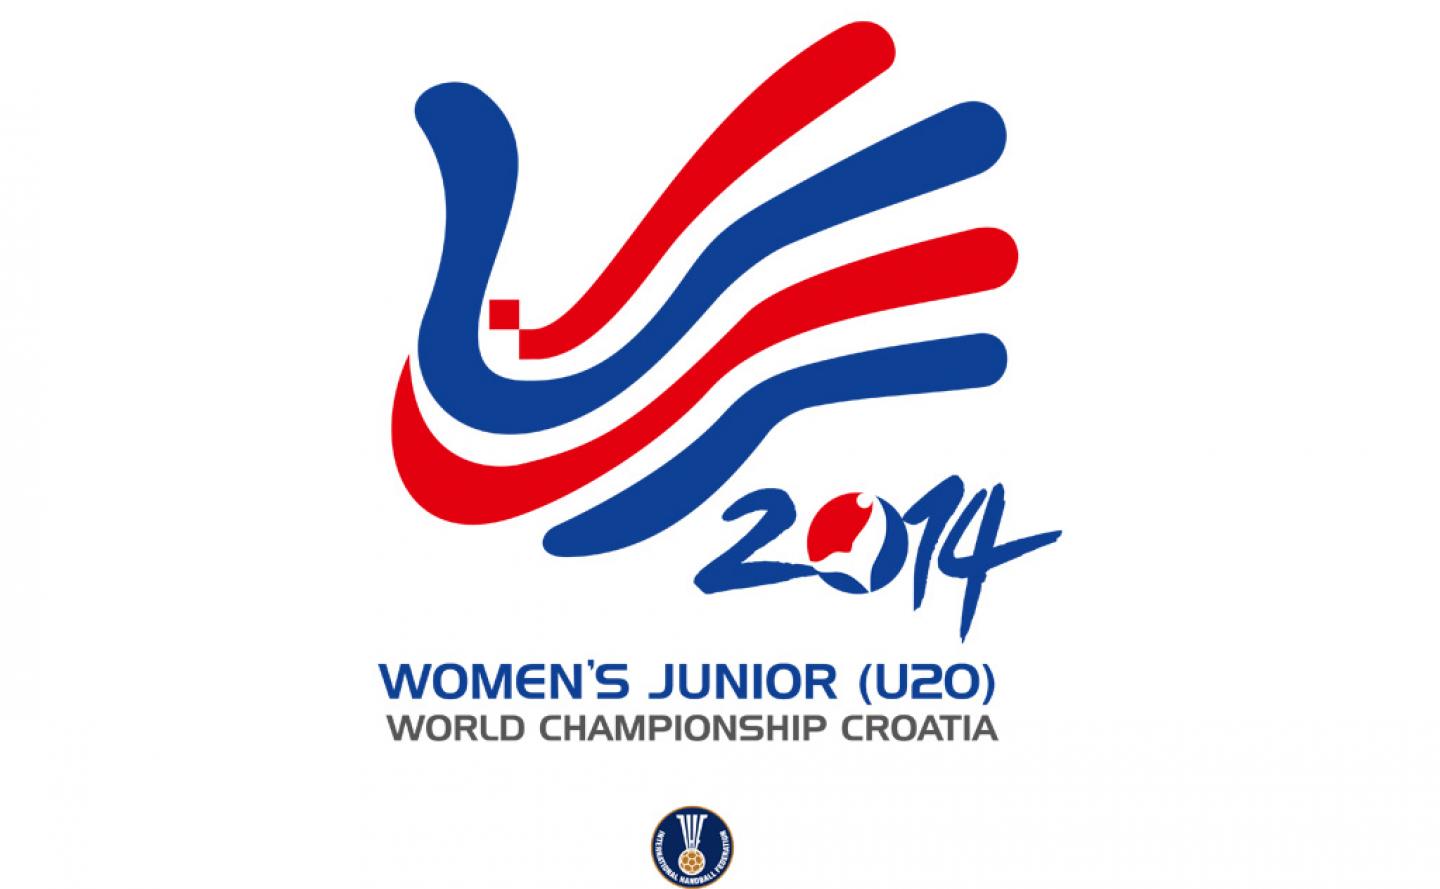 IHF Match schedule for Womens Junior (U20) WCh online